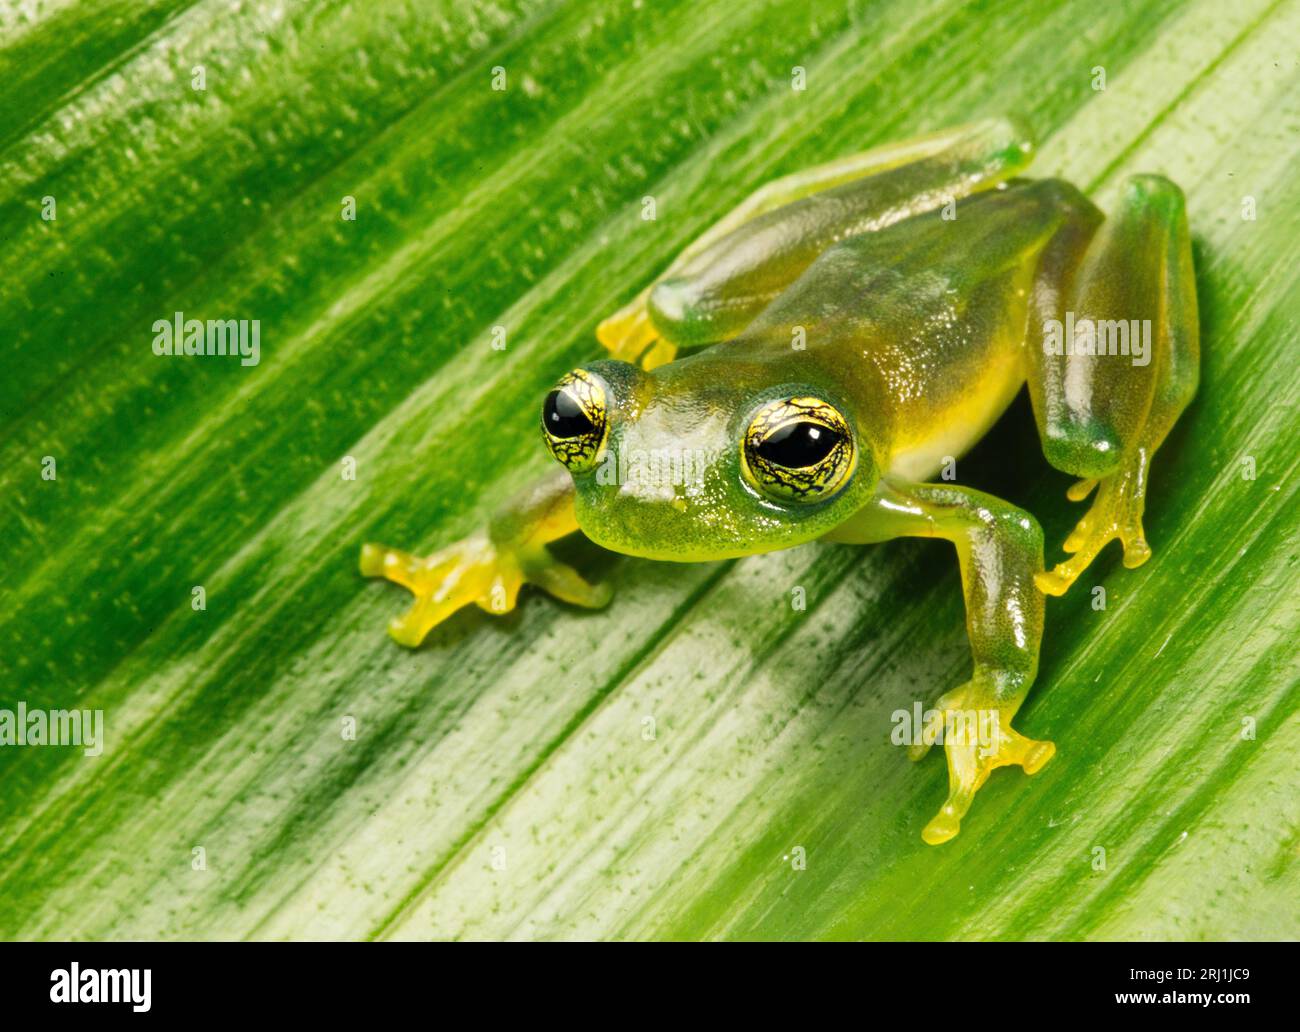 Teratohyla spinosa grenouille verte (grenouille cochran épineuse) de la famille des centrolenidae sur une feuille verte dans la jungle de Guna Yala, Panama. Banque D'Images